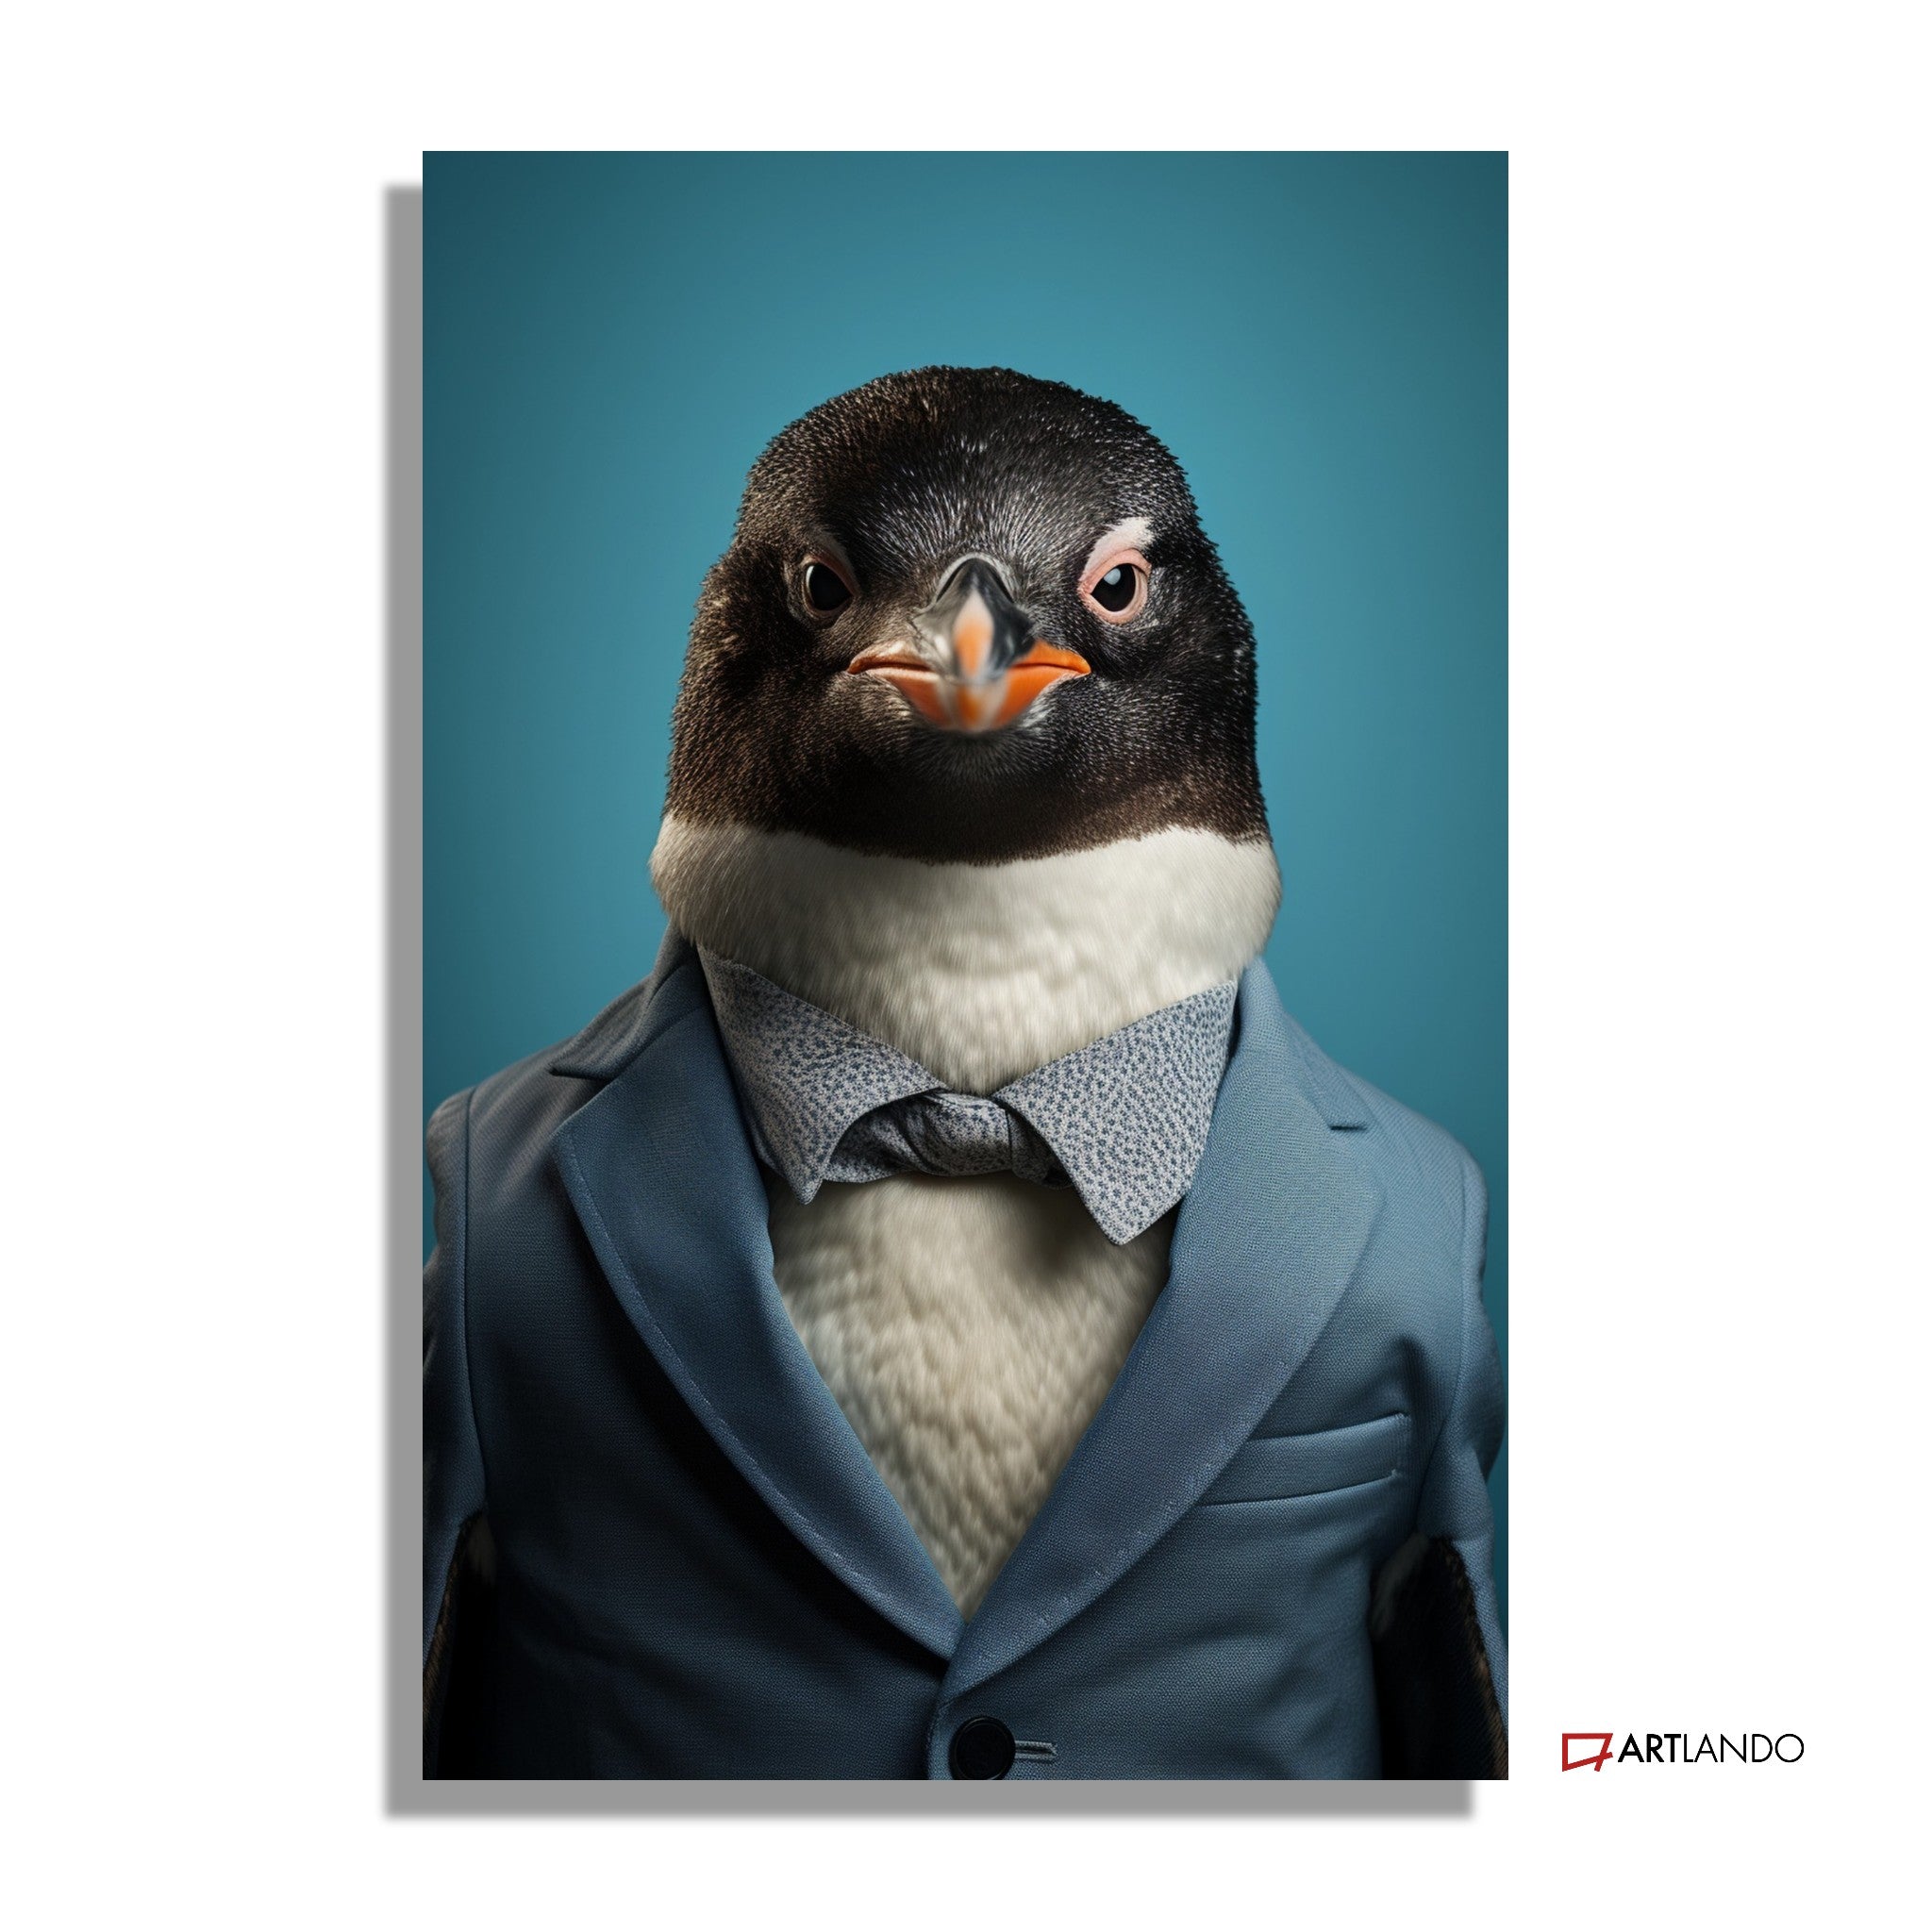 Pinguin als Geschäftsmann in blauem Anzug